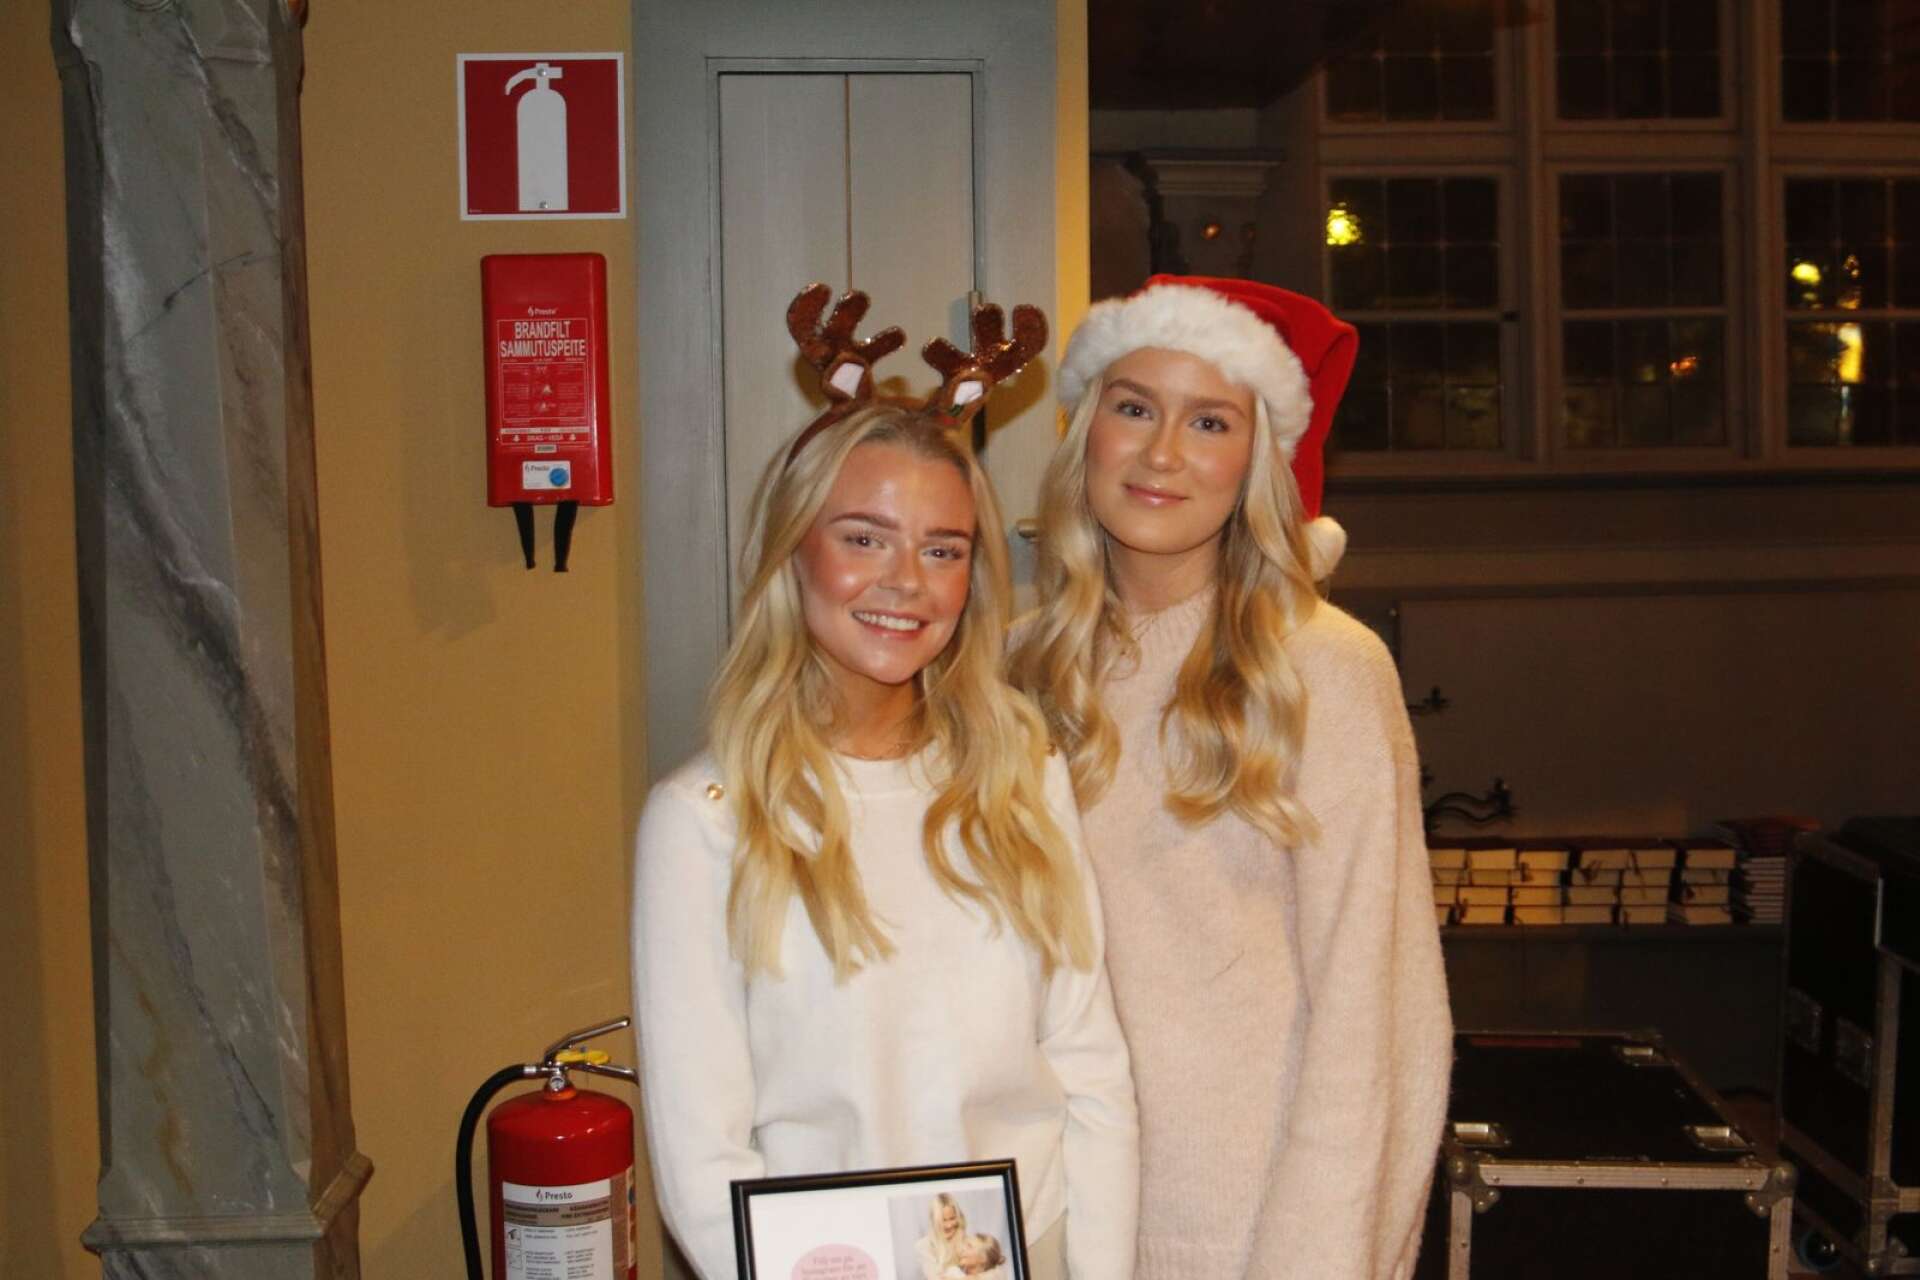 Elvira Hallqvist och Nova Zmorzynski stod vid ingången och välkomnade gästerna och sålde genom sitt UF-företag, Amicitia UF, egengjorda julgranskulor, där 50 kronor för varje såld julgranskula går till att köpa julklappar till barn.